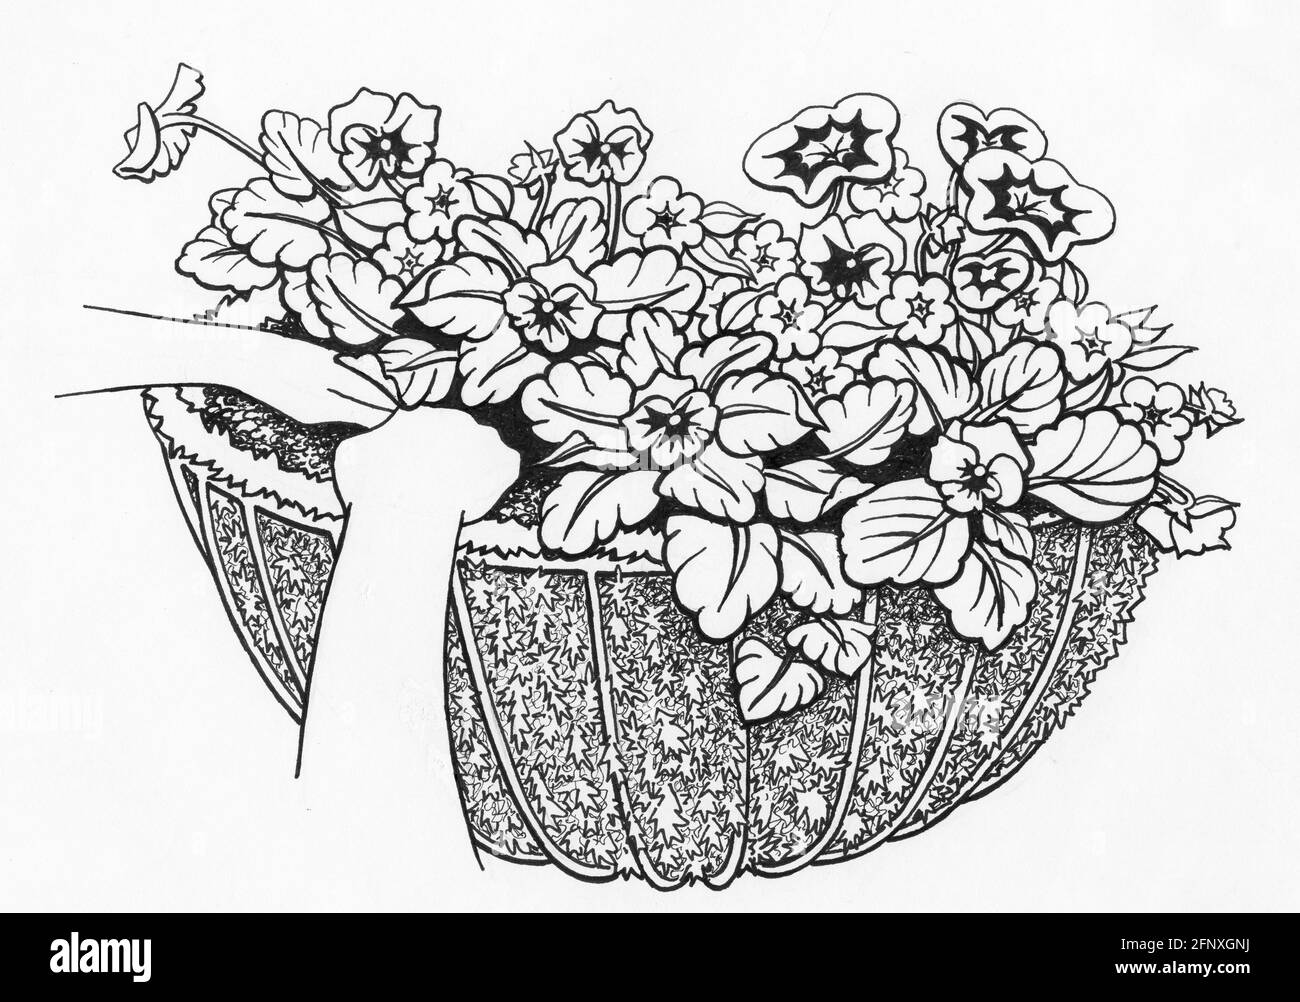 Un disegno di un cesto da parete completato con uno sfagnum liner muschio e piante fiorite Foto Stock